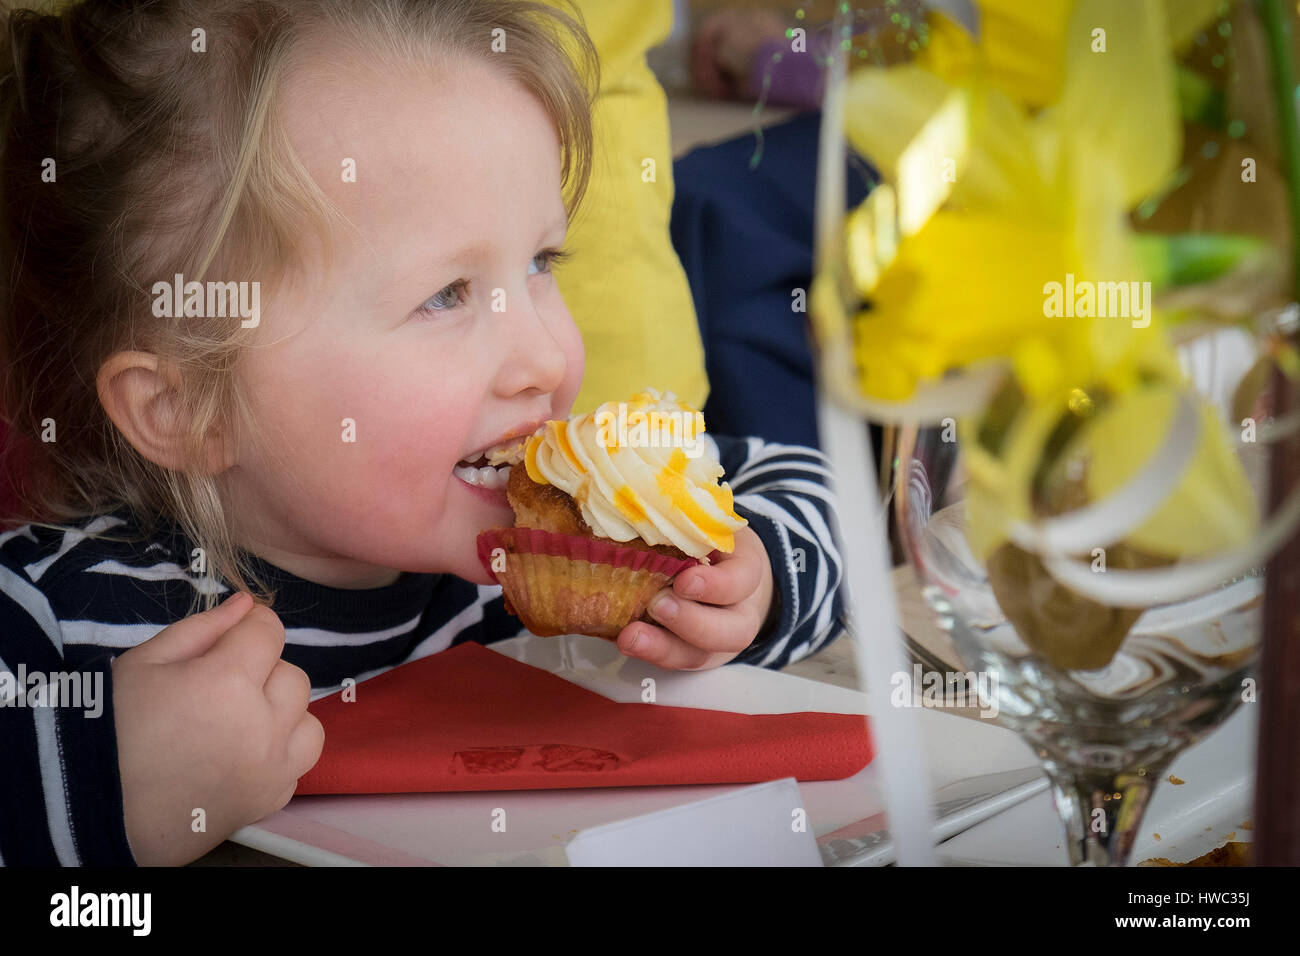 Hübsche blonde Kind Mädchen junge genießen essen Kuchen Cupcake Stockfoto